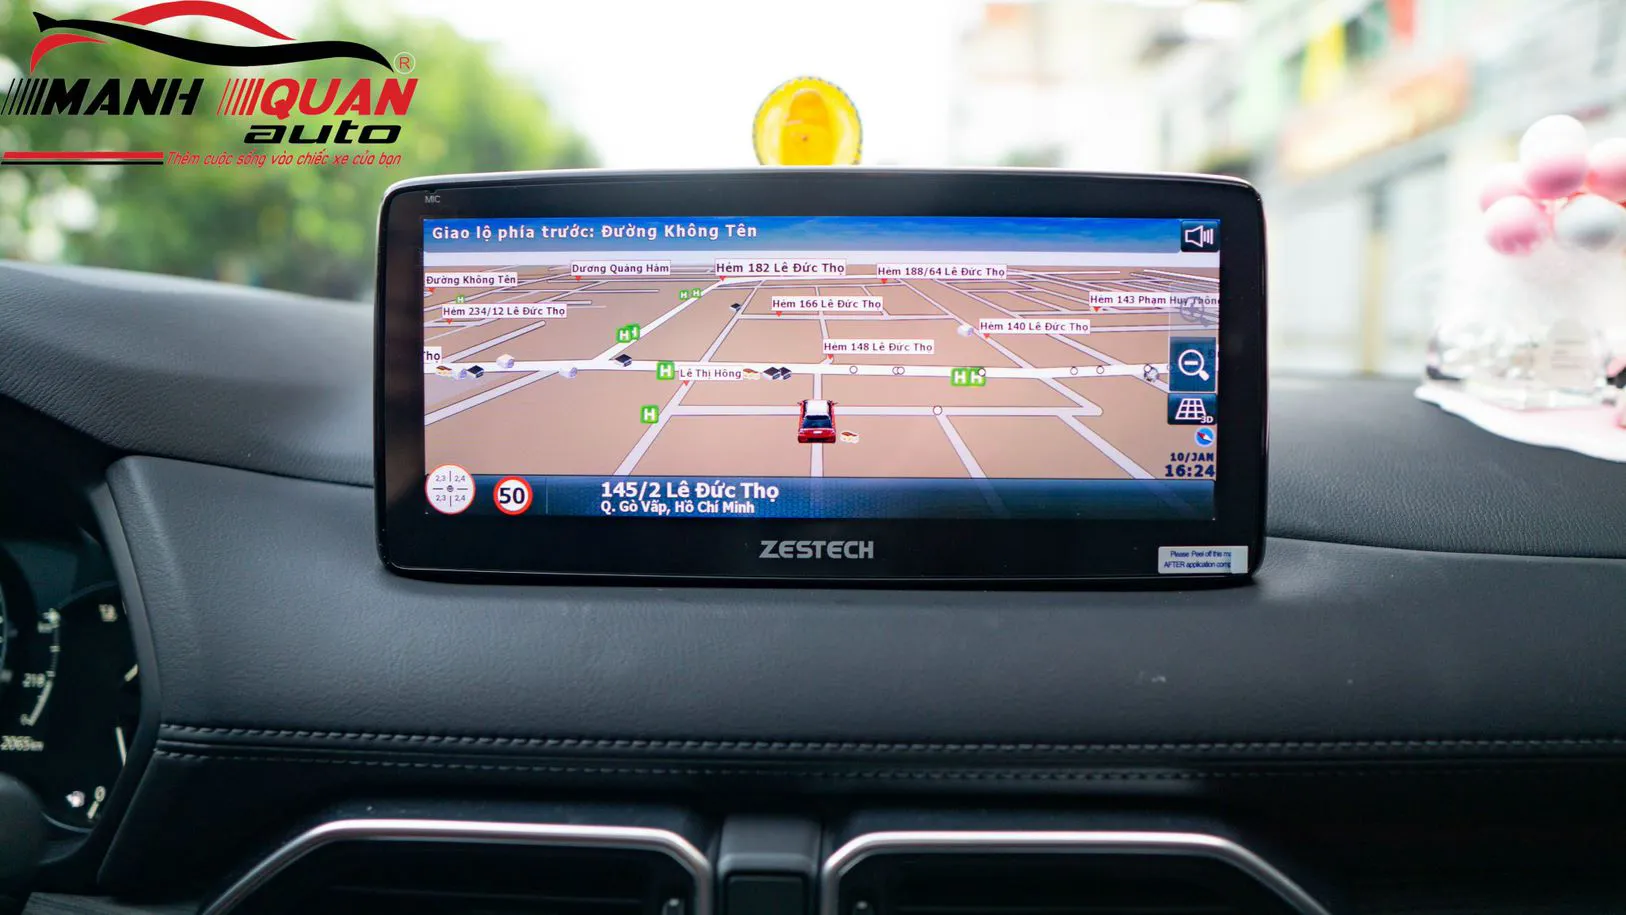 Địa chỉ lắp đặt màn hình android Zestech cho ô tô tại Bình Thuận